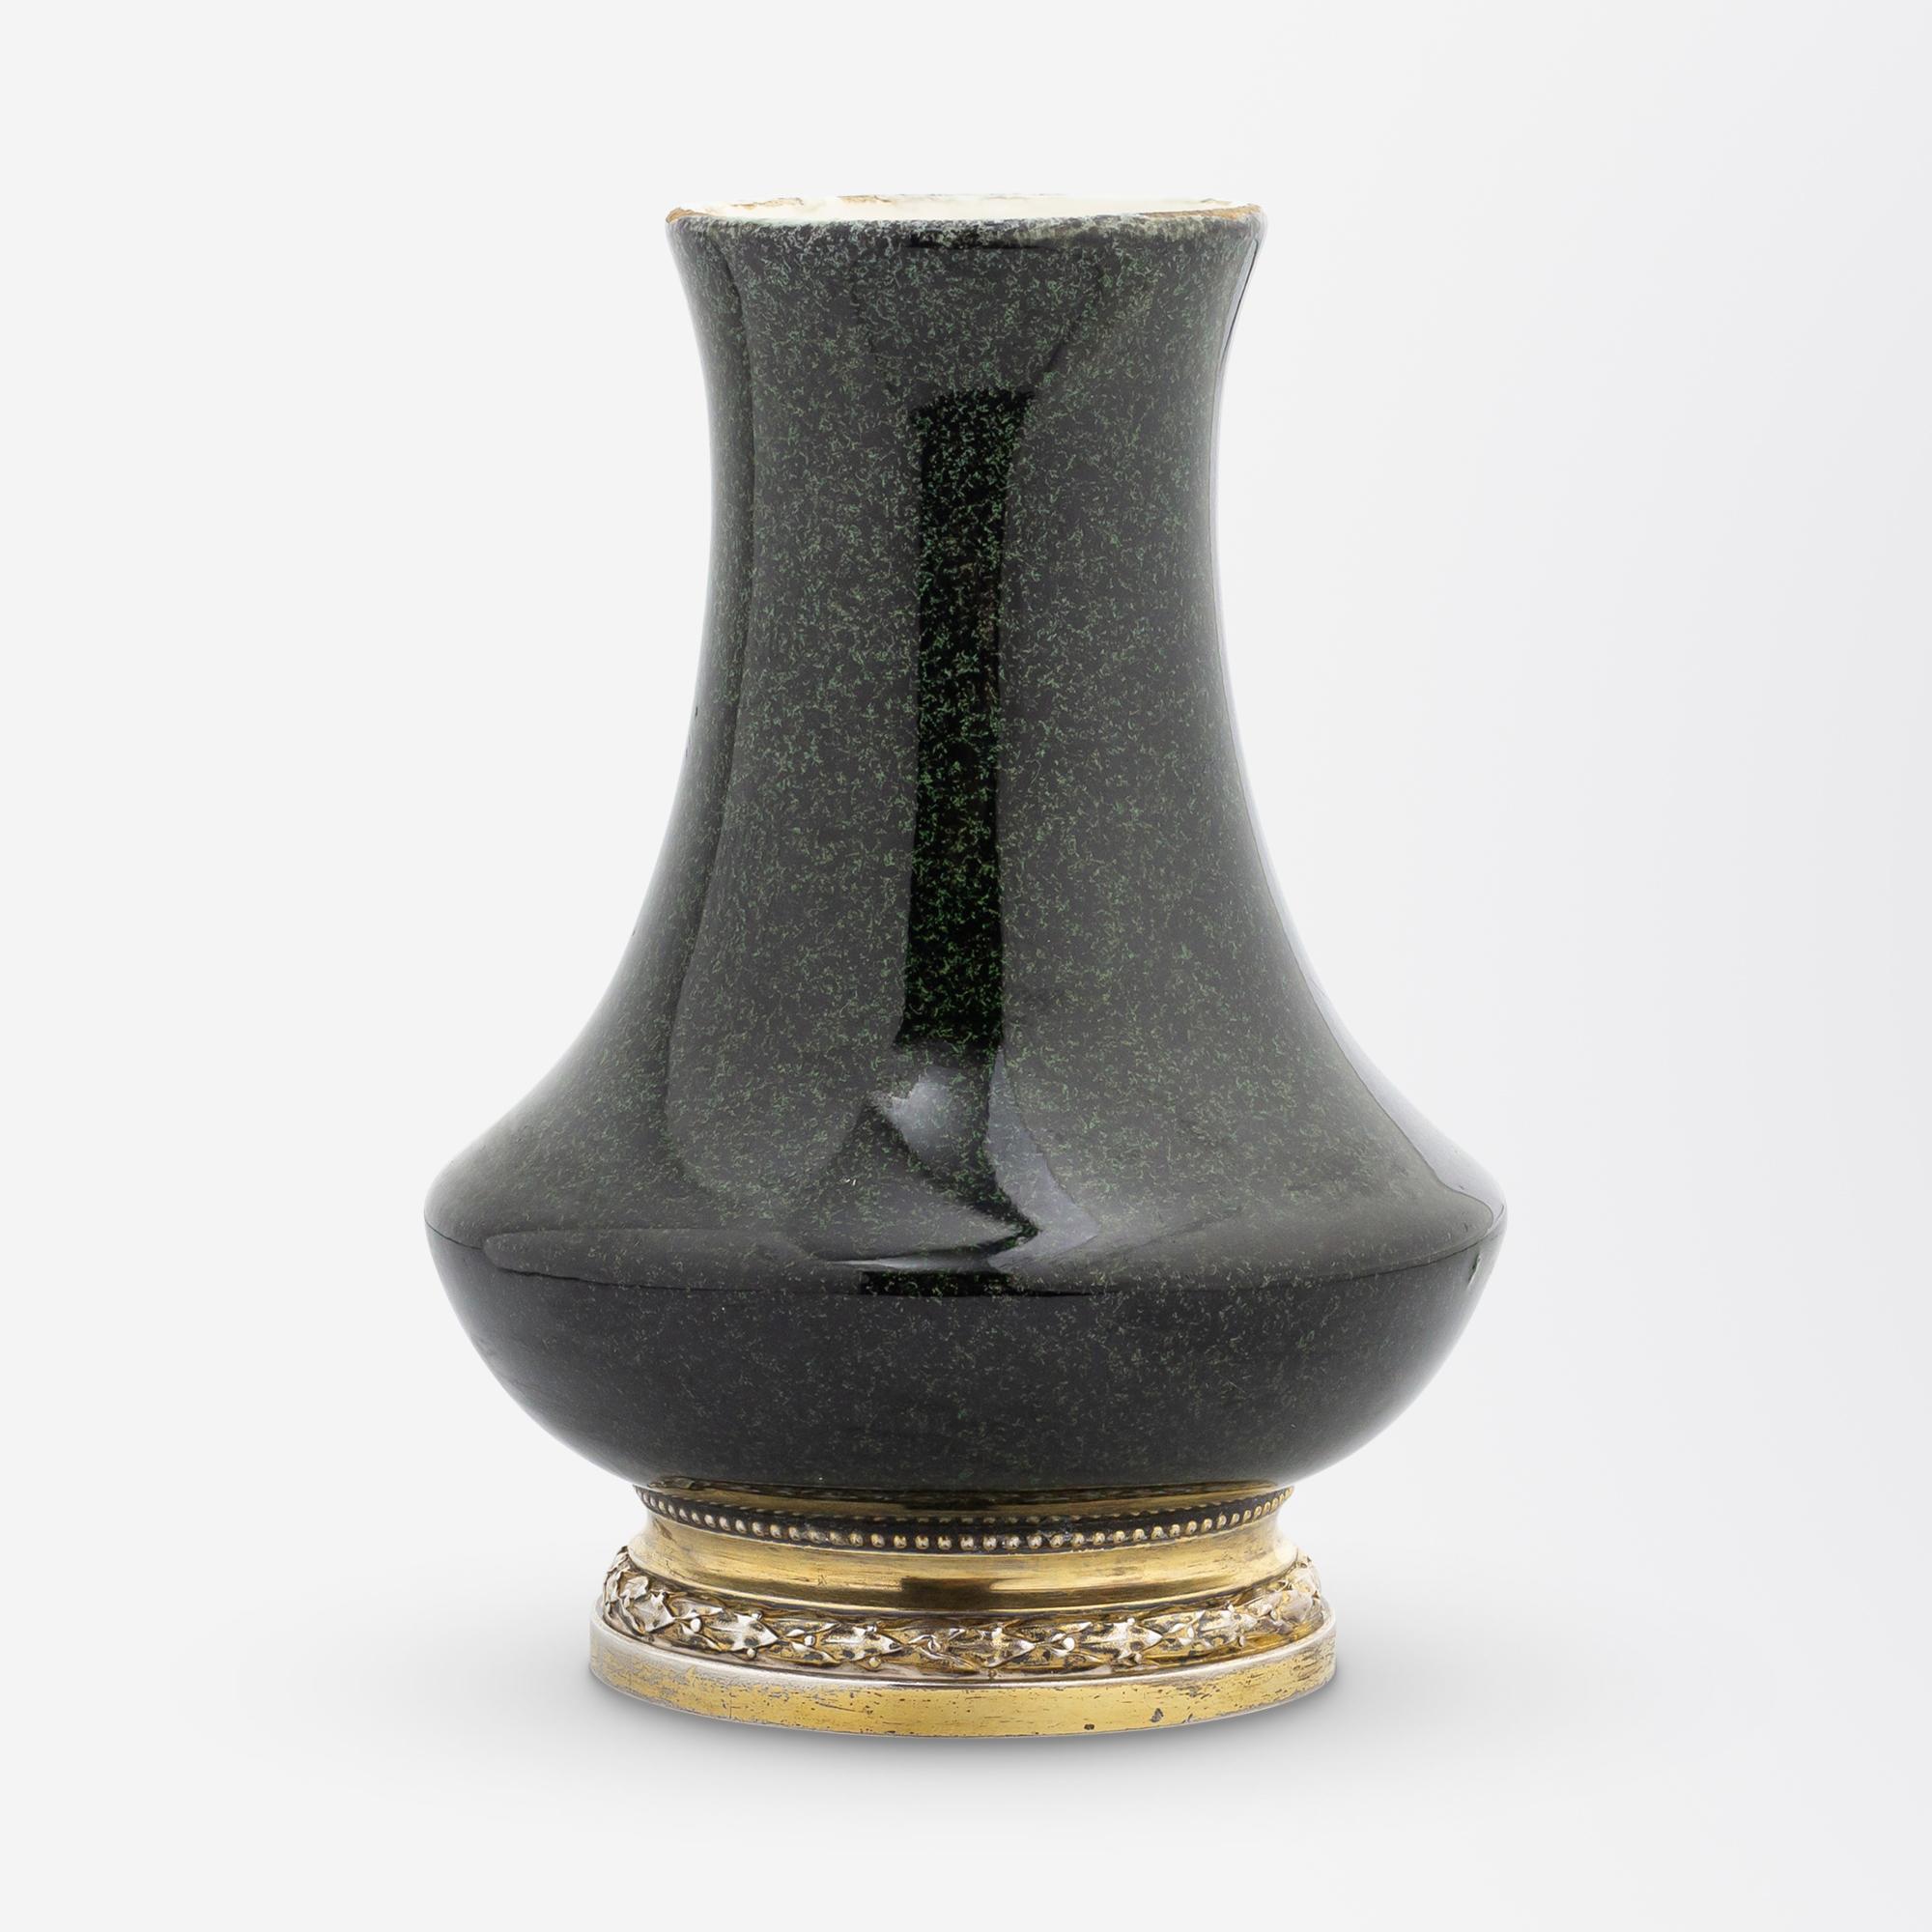 Diese wunderschöne Knospenvase wurde von dem Keramiker Paul Milet (1870-1950) im ersten Viertel des 20. Jahrhunderts in Frankreich hergestellt. Die kleine Vase mit grün gesprenkelter Glasur ist typisch für die Arbeiten von Milet, der bei Serves in